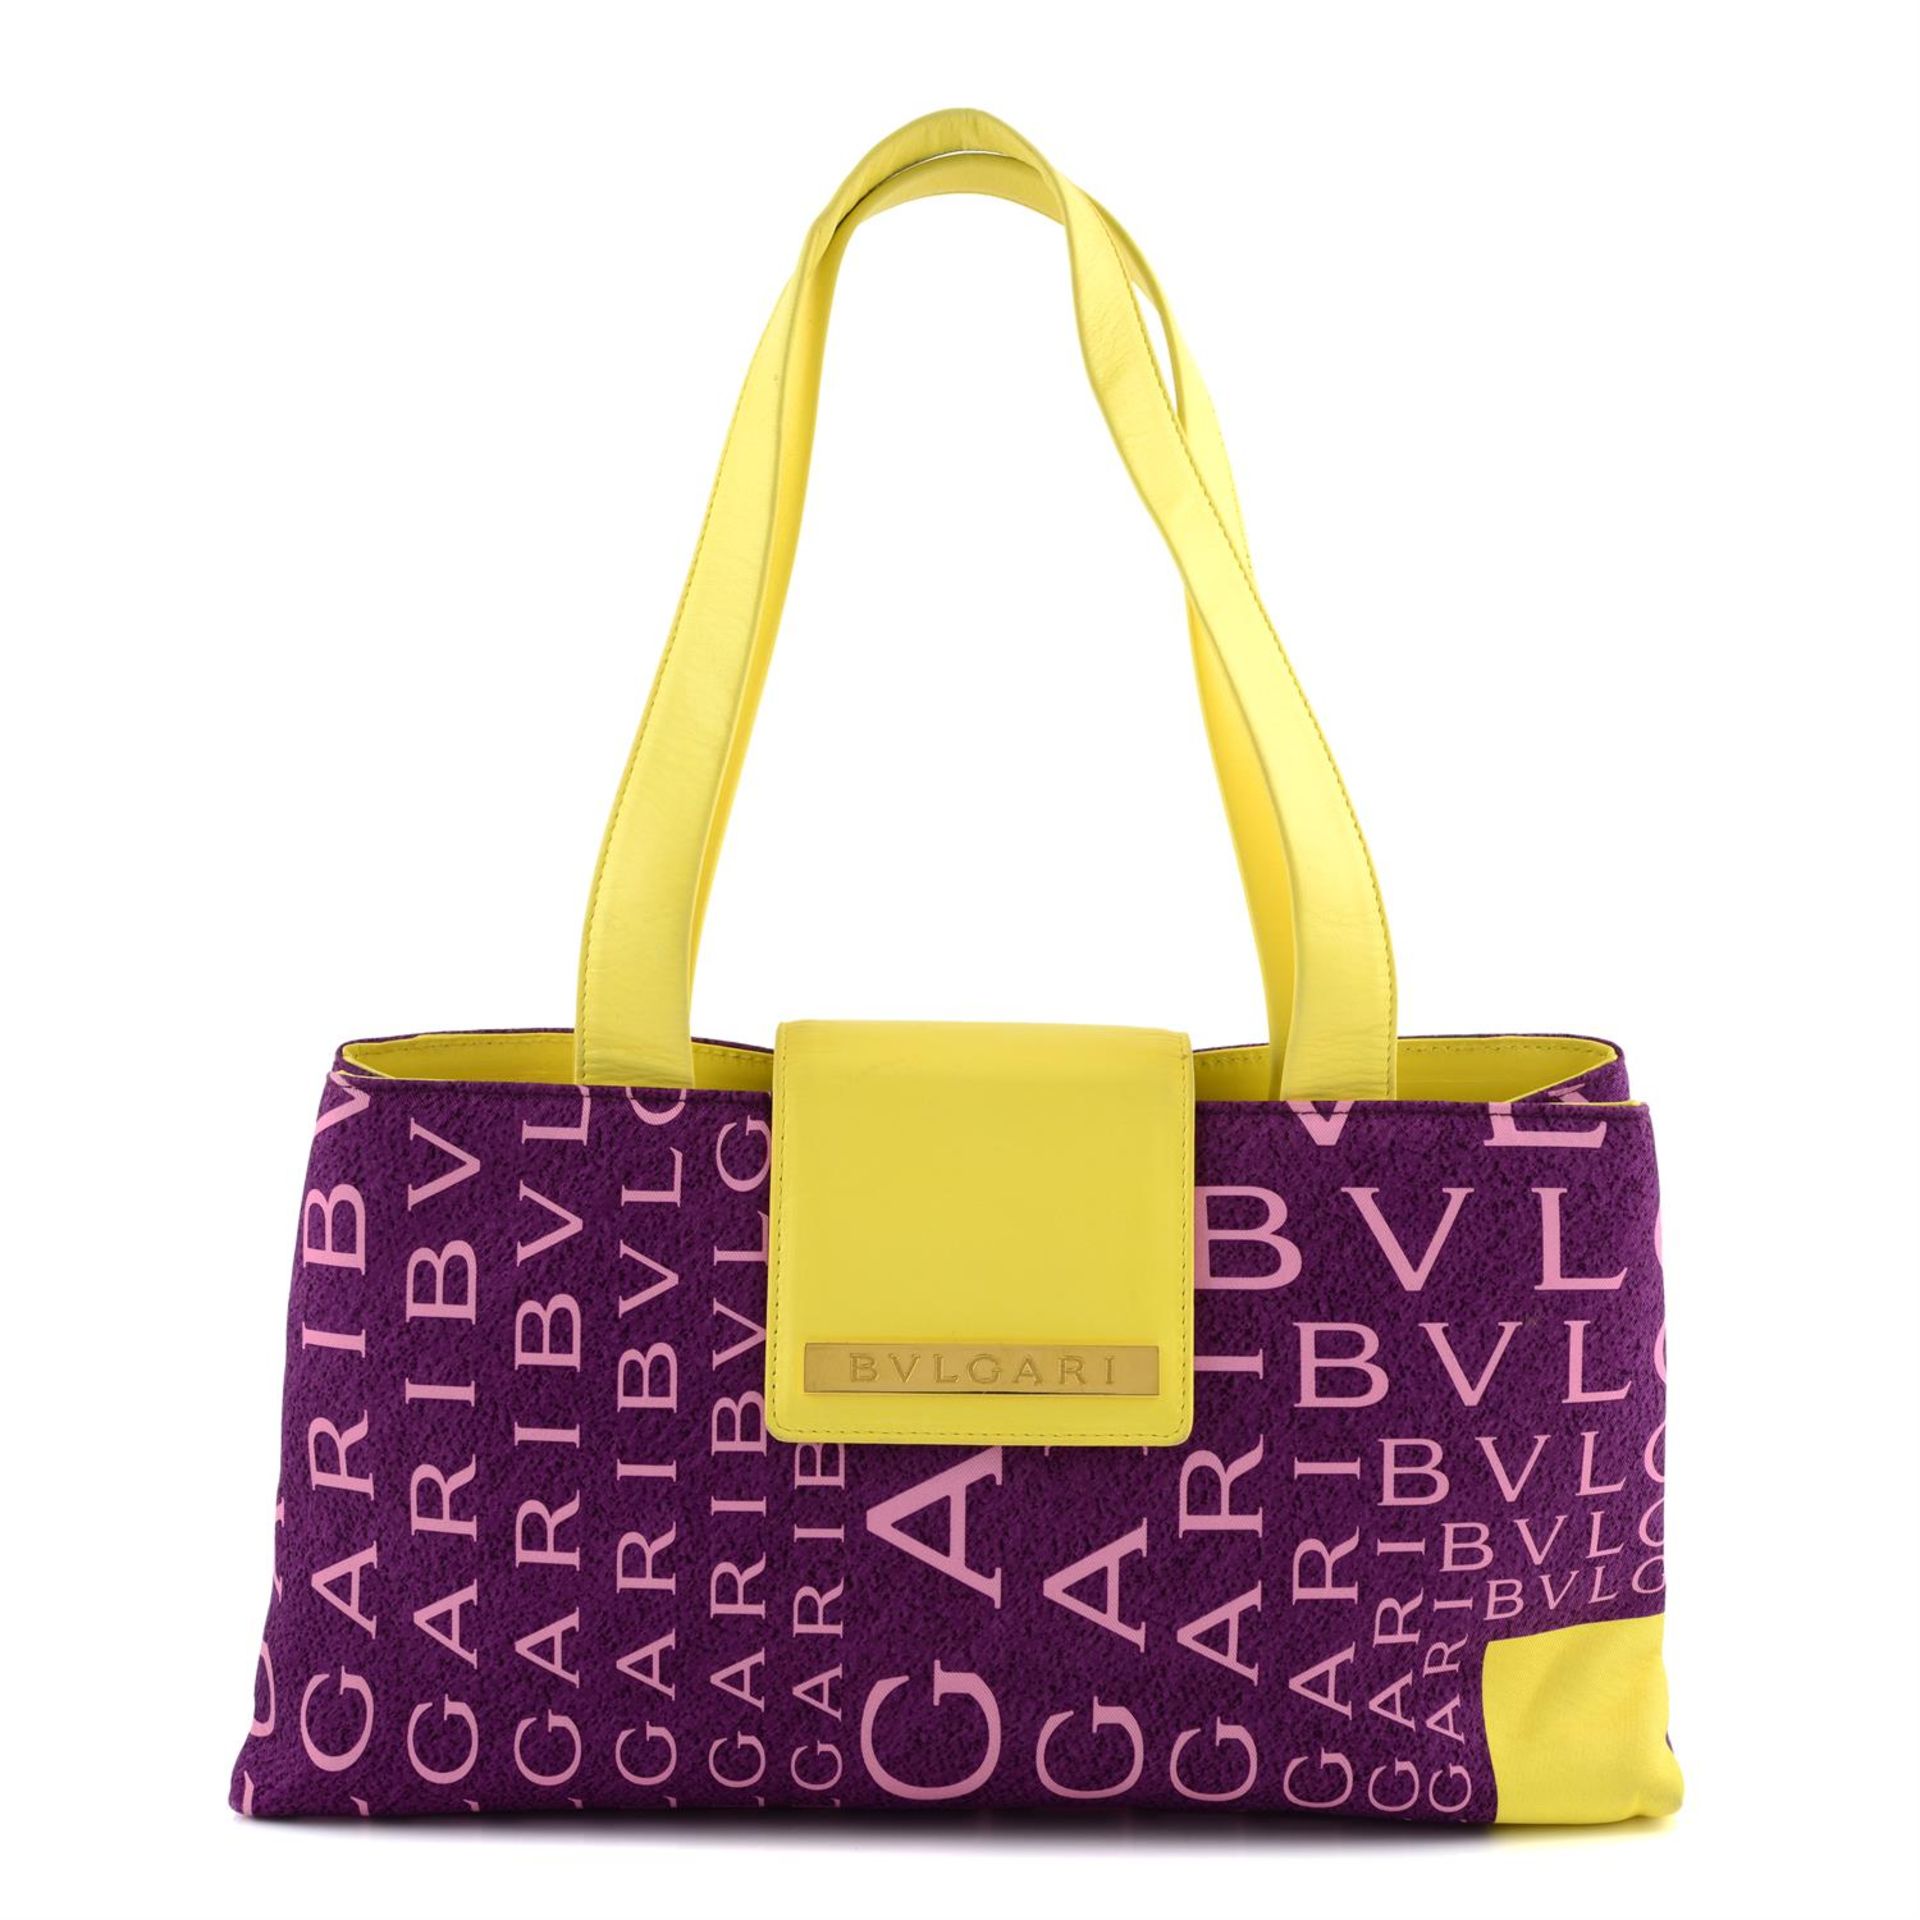 BULGARI - a purple monogram handbag.